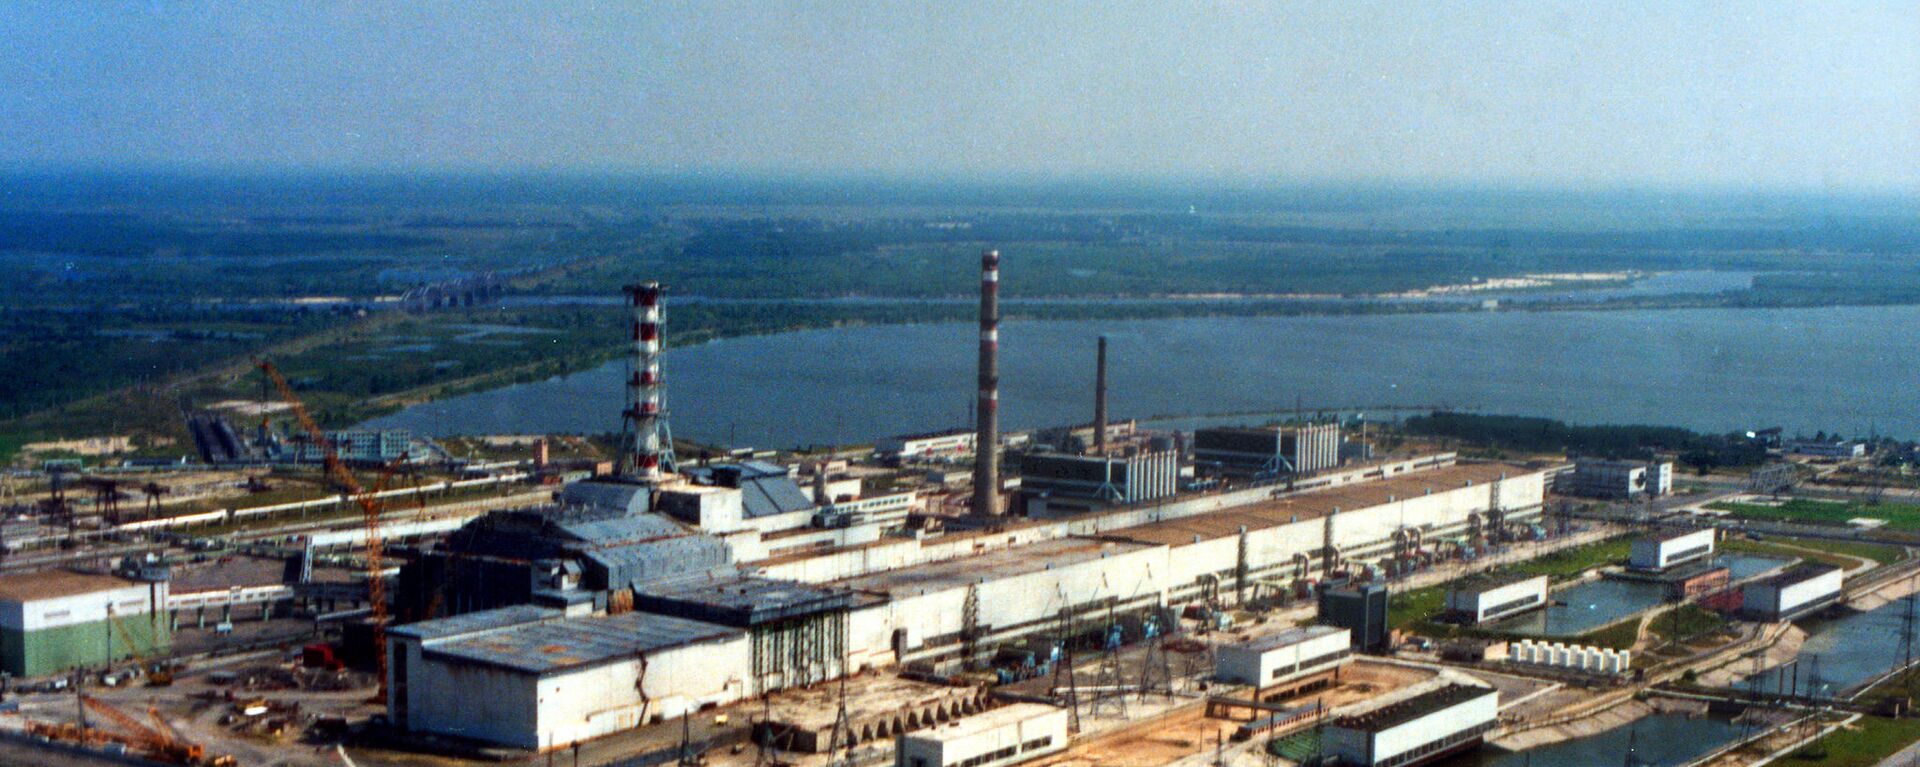 Вид с воздуха на Чернобыльскую АЭС, Украина, 2007 год  - Sputnik International, 1920, 29.08.2022